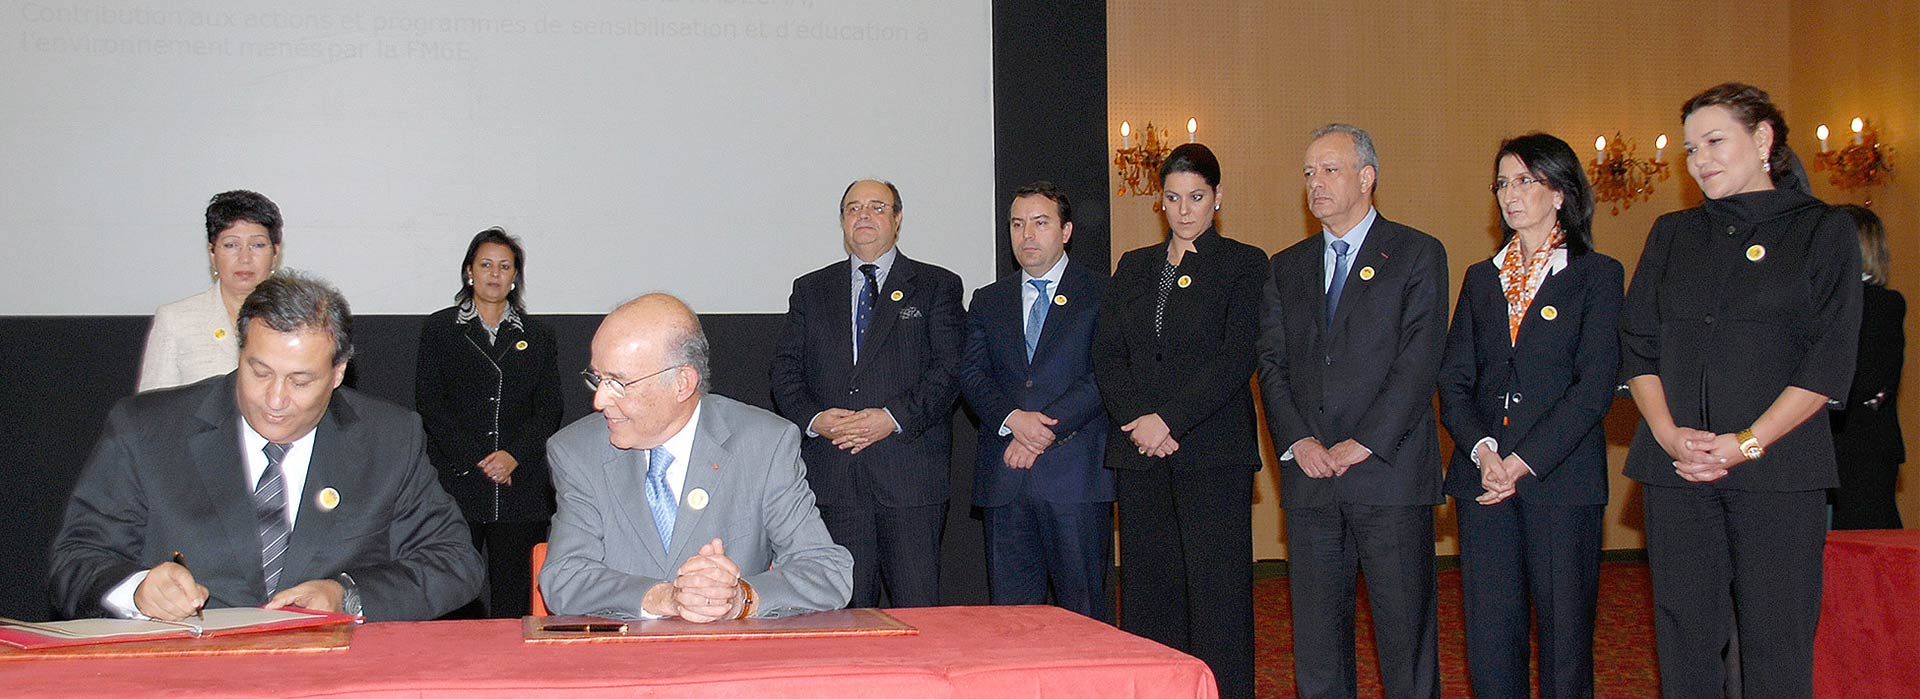 03 décembre 2011: <strong>Son Altesse Royale la Princesse Lalla Hasnaa</strong>,préside la réunion du bilan d’étape relative à l’état d’avancement du programme de Sauvegarde et Développement de la Palmeraie de Marrakech